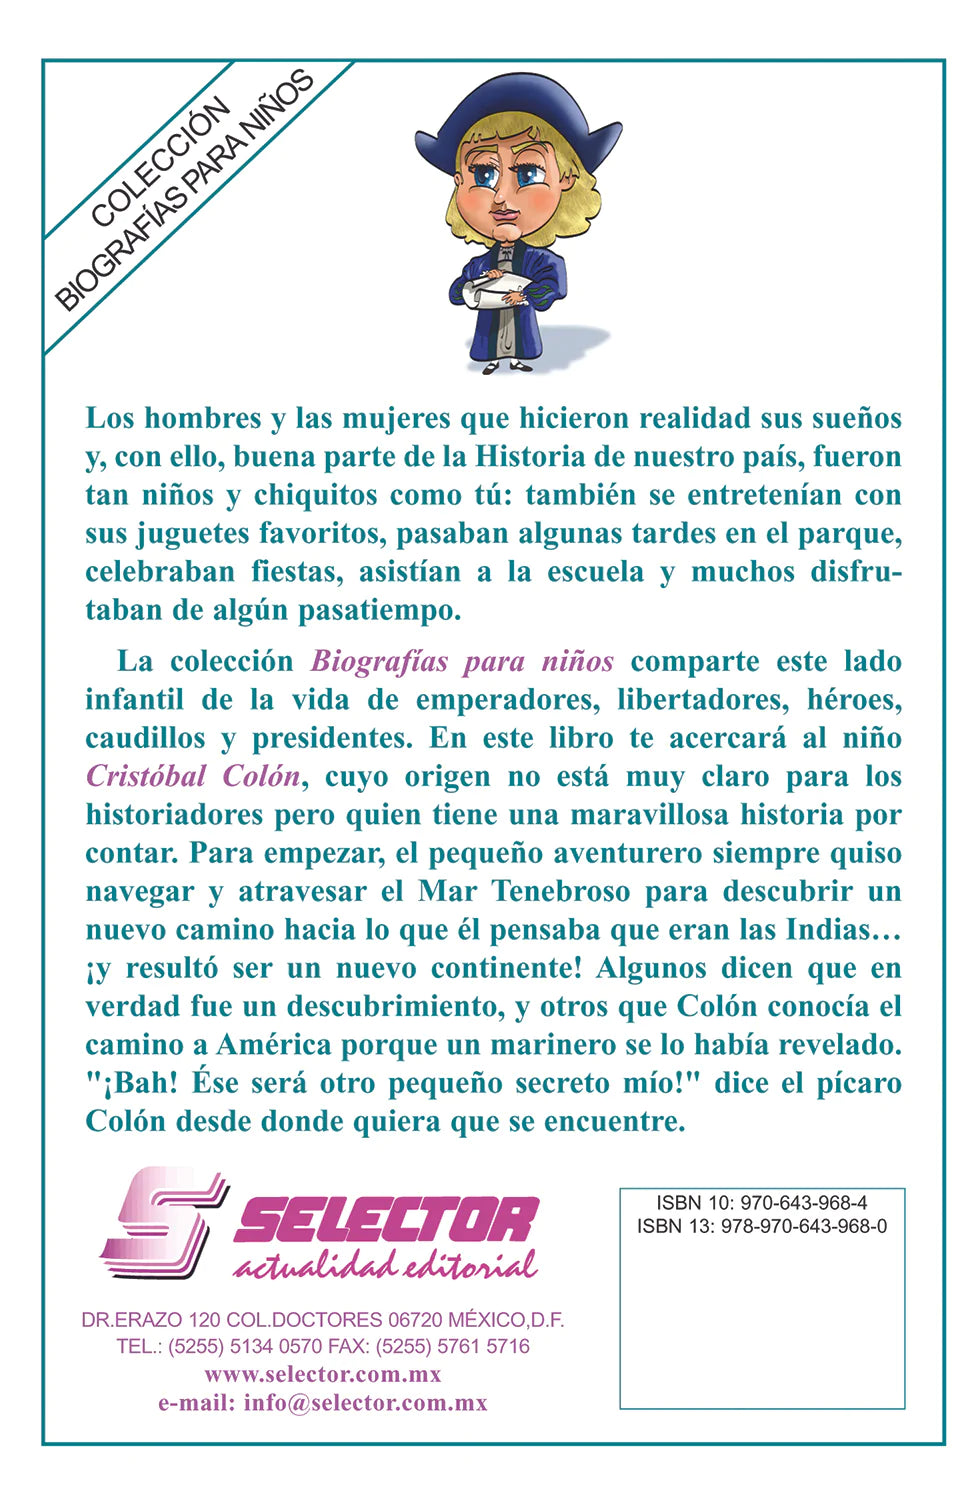 Cristóbal Colón - Editorial Selector